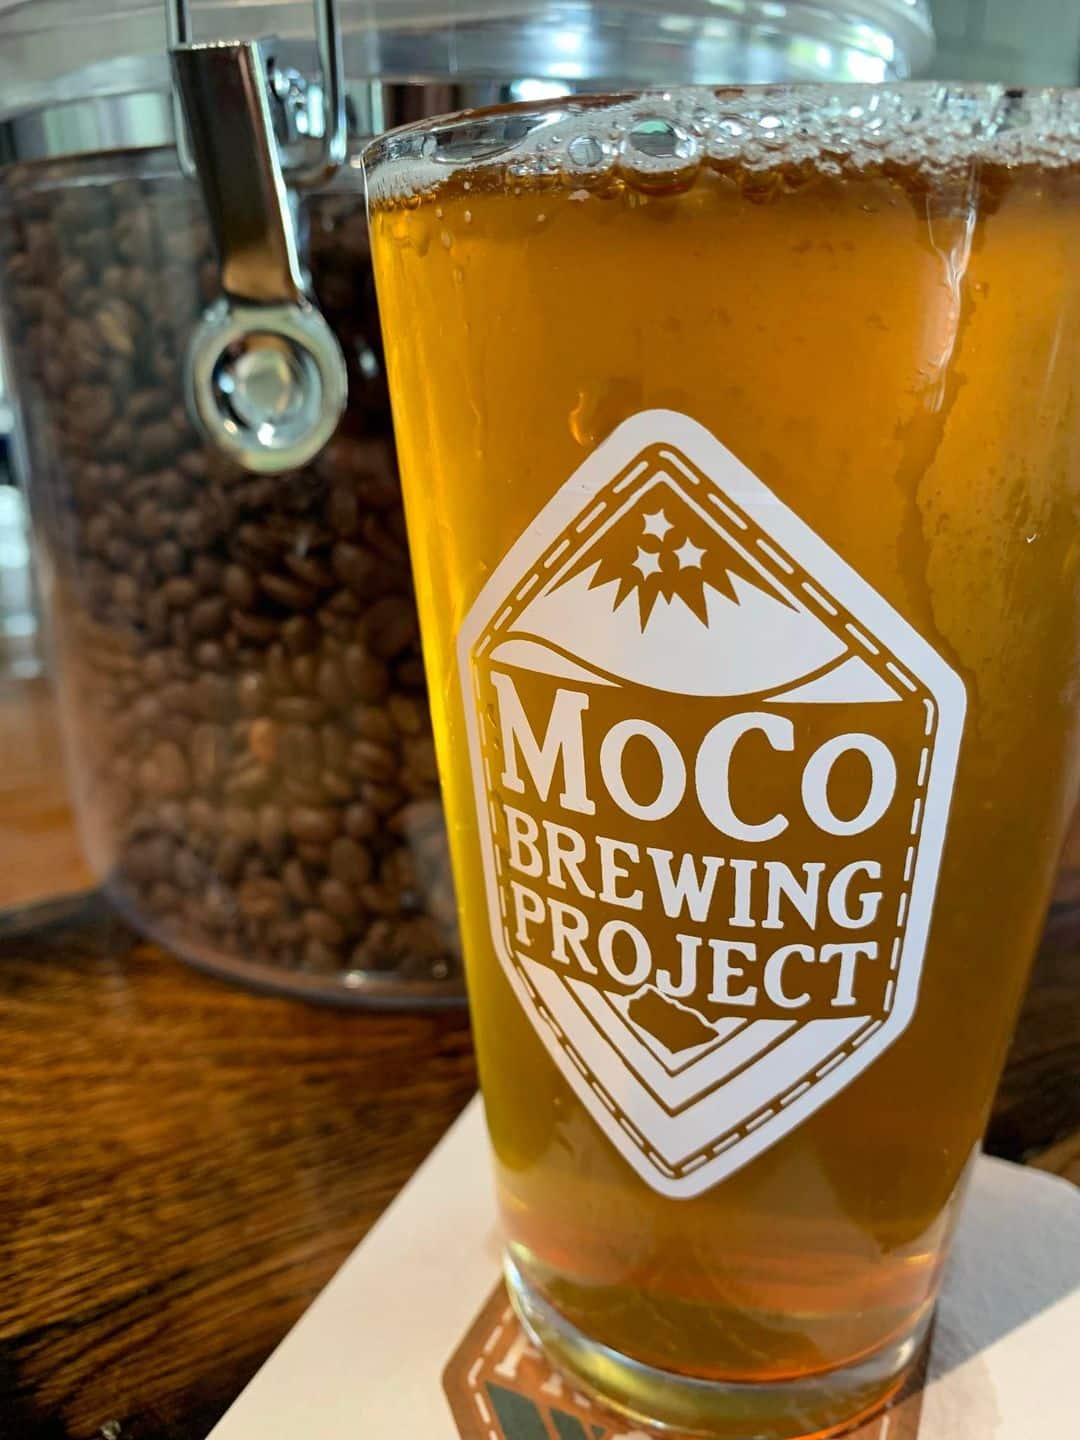 MoCo Brewing Project